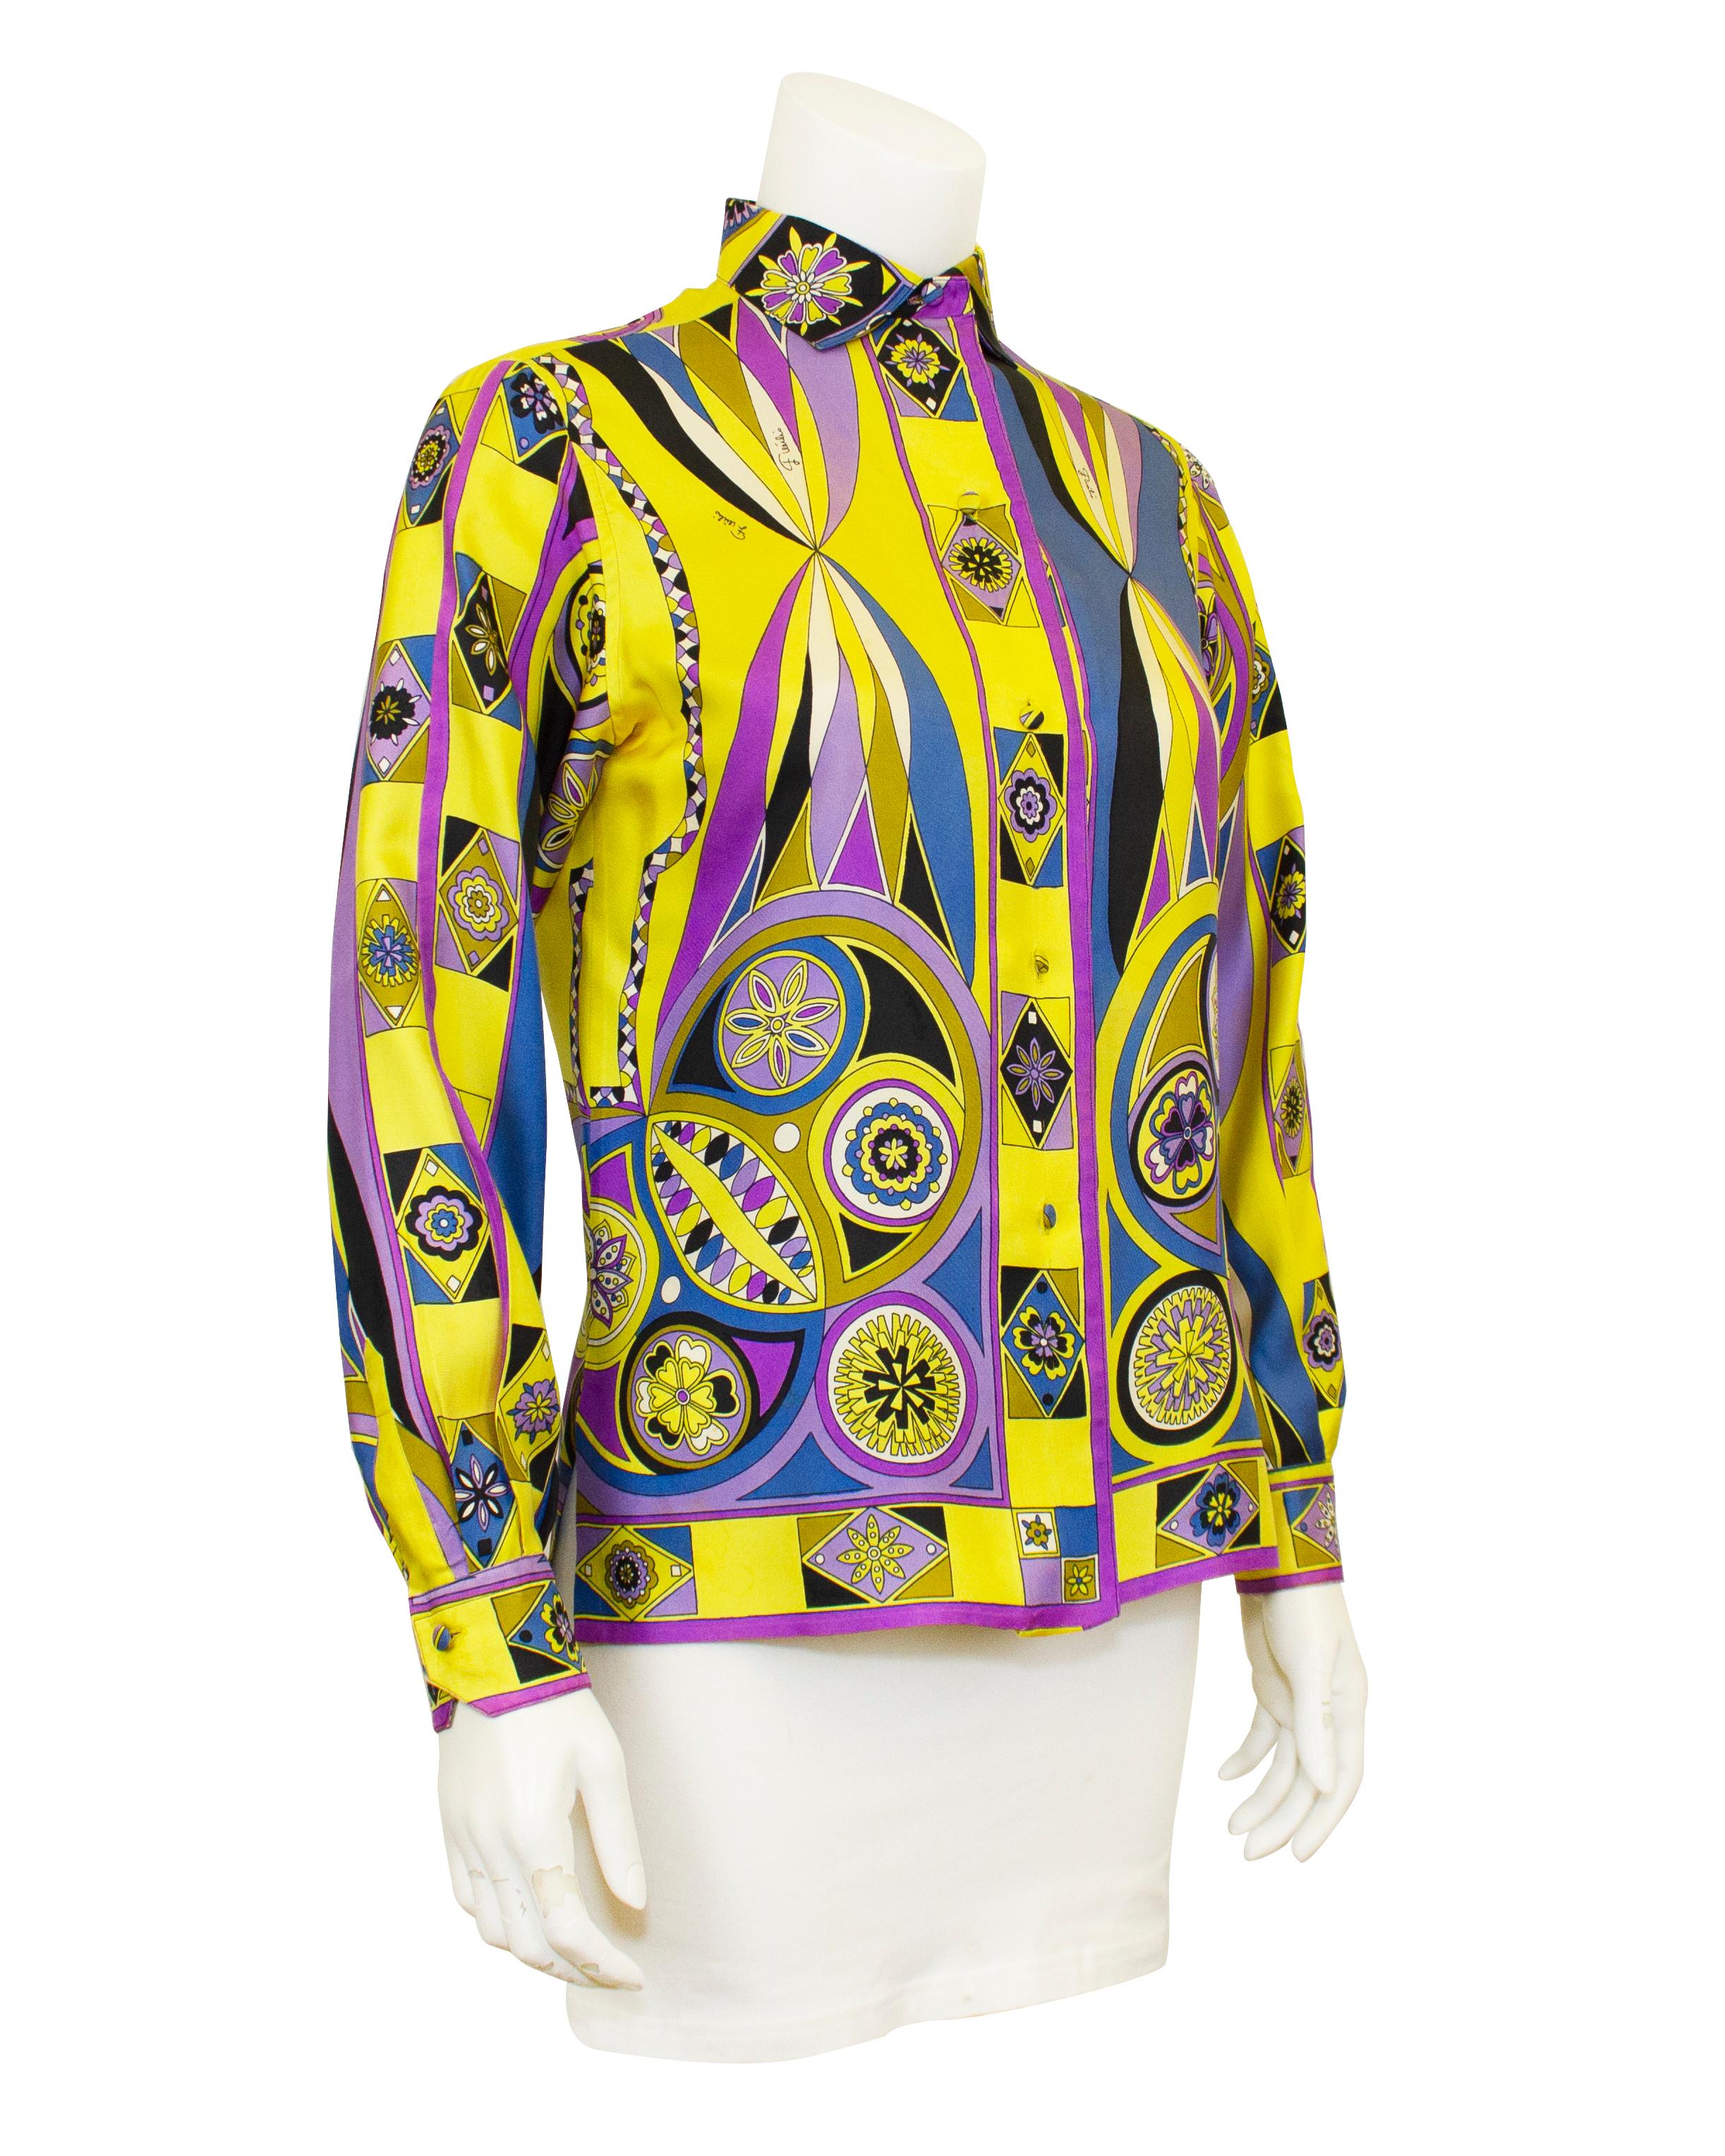 Kräftig bedrucktes Emilio Pucci-Seidenhemd aus den 1970er Jahren. Ikonischer abstrakter geometrischer und floraler Druck von Pucci in leuchtendem Gelb, Lila, Blau und Schwarz. Auf dem oberen Rücken ist ein großer Schmetterling abgebildet. Mit Stoff